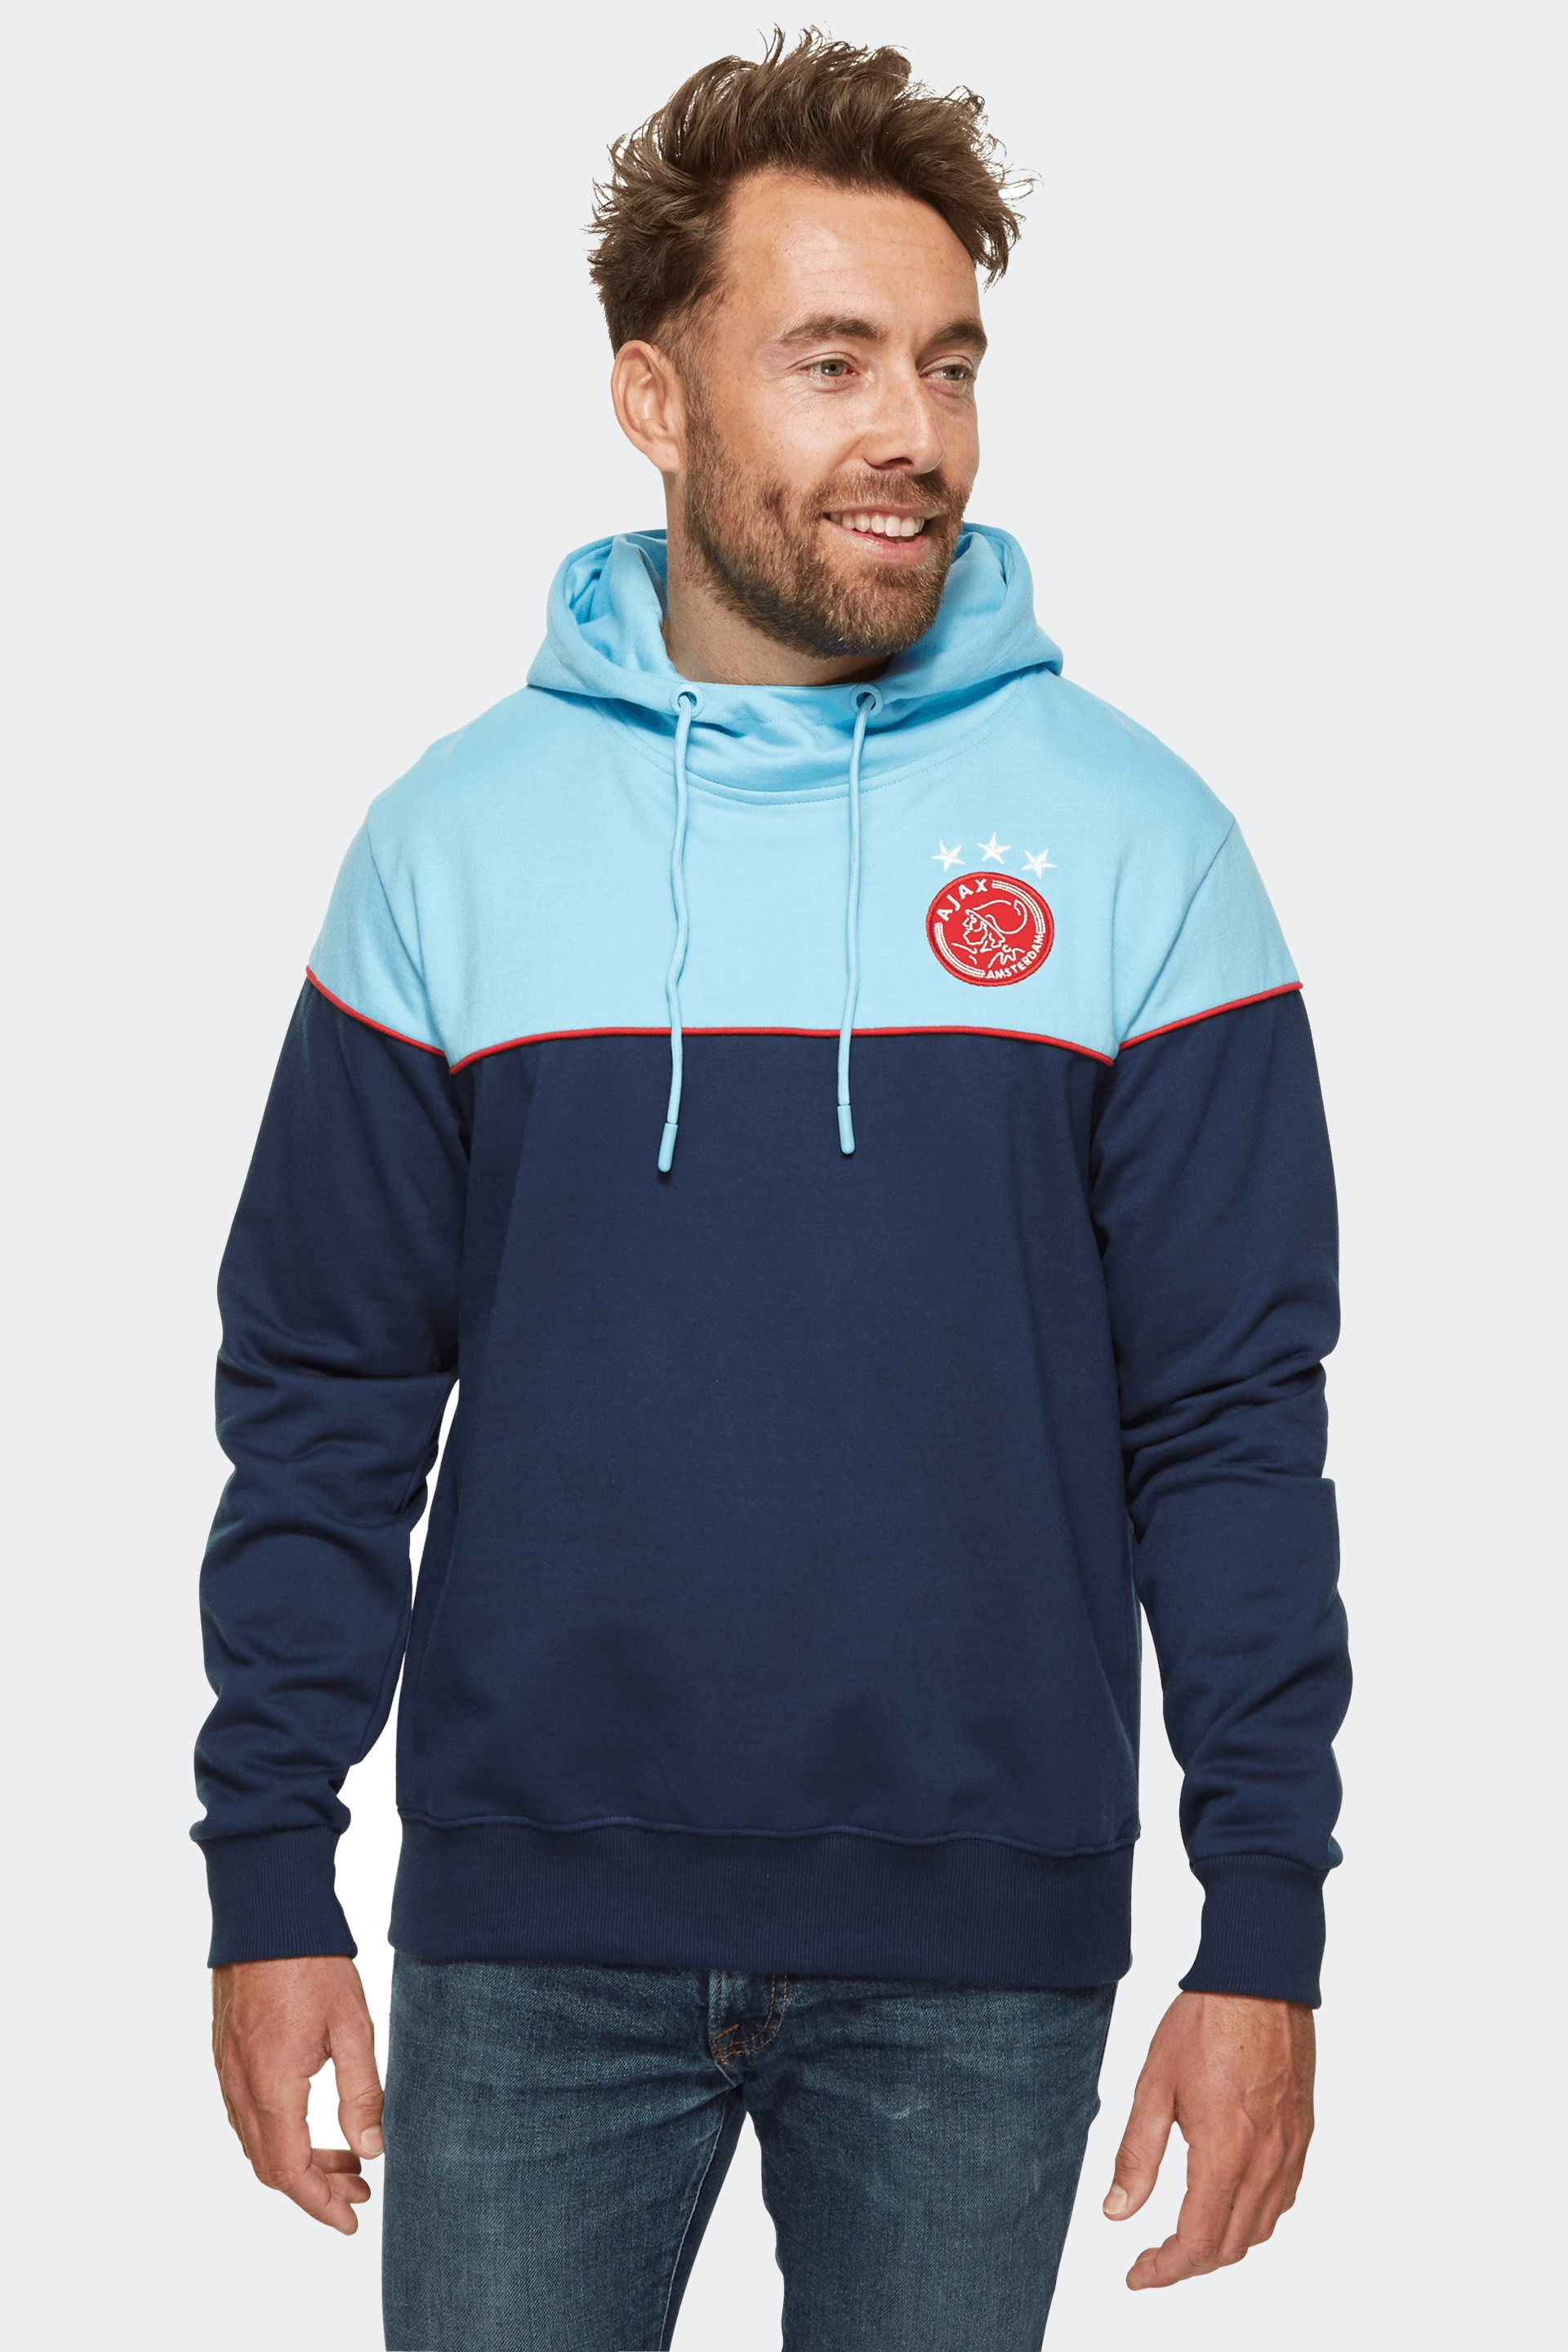 Ajax hoodie 2020-2021